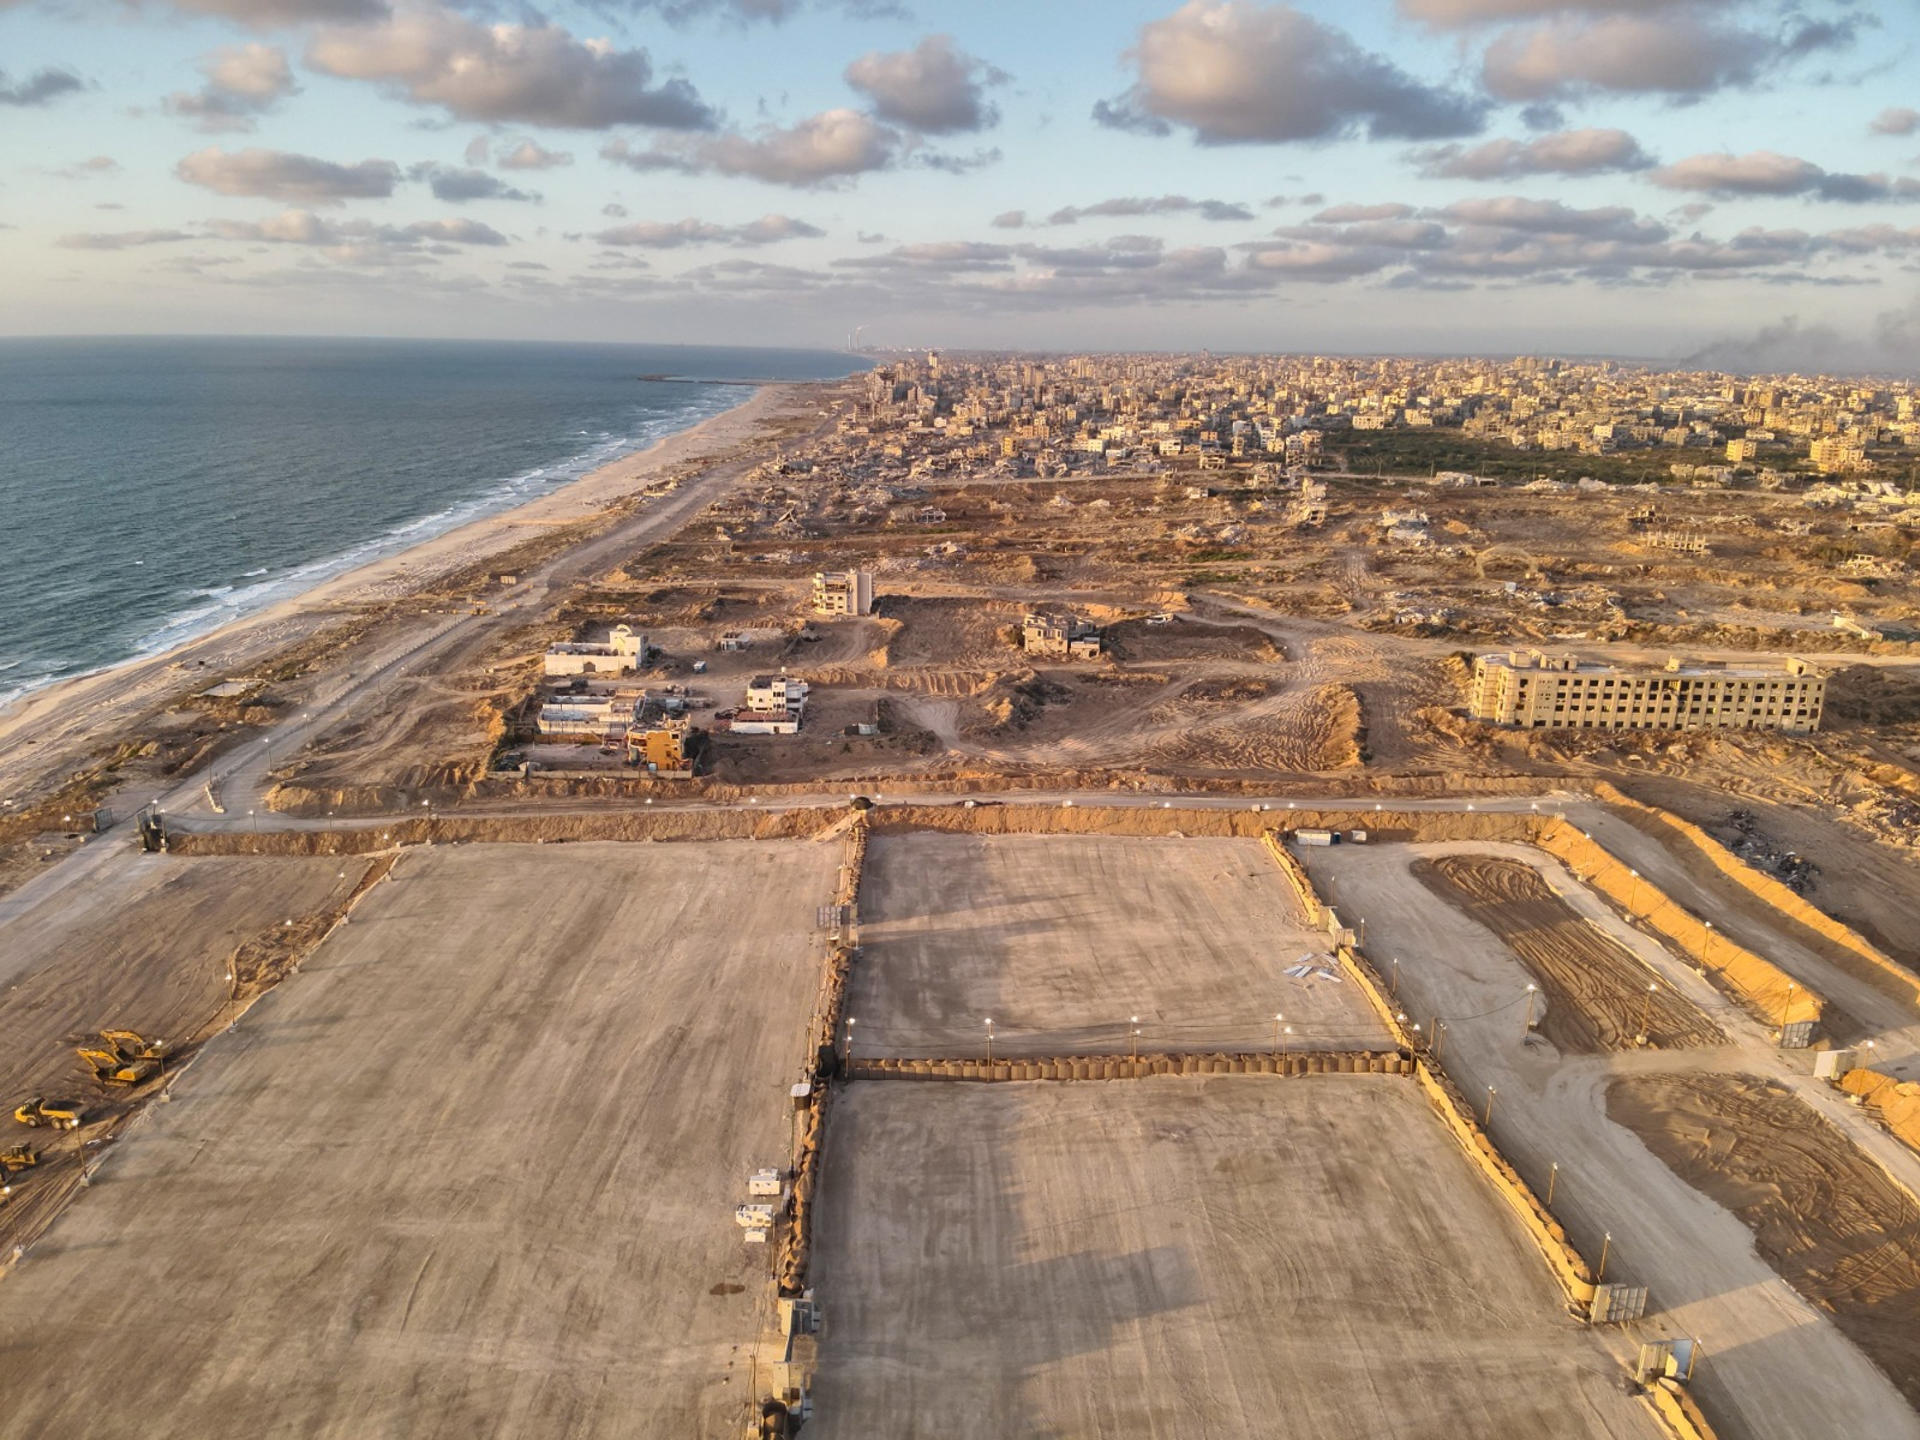 El muelle flotante construido por Estados Unidos frente a las costas de Gaza para proporcionar ayuda humanitaria a los gazatíes ya ha sido anclado en una de las playas de la franja, informó ayer jueves el Comando Central de EE.UU. (CENTCOM por sus siglas en inglés). EFE/Ejército Israelí SÓLO USO EDITORIAL SOLO USO PERMITIDO PARA ILUSTRAR LA NOTICIA QUE APARECE EN EL PIE DE FOTO CRÉDITO OBLIGATORIO